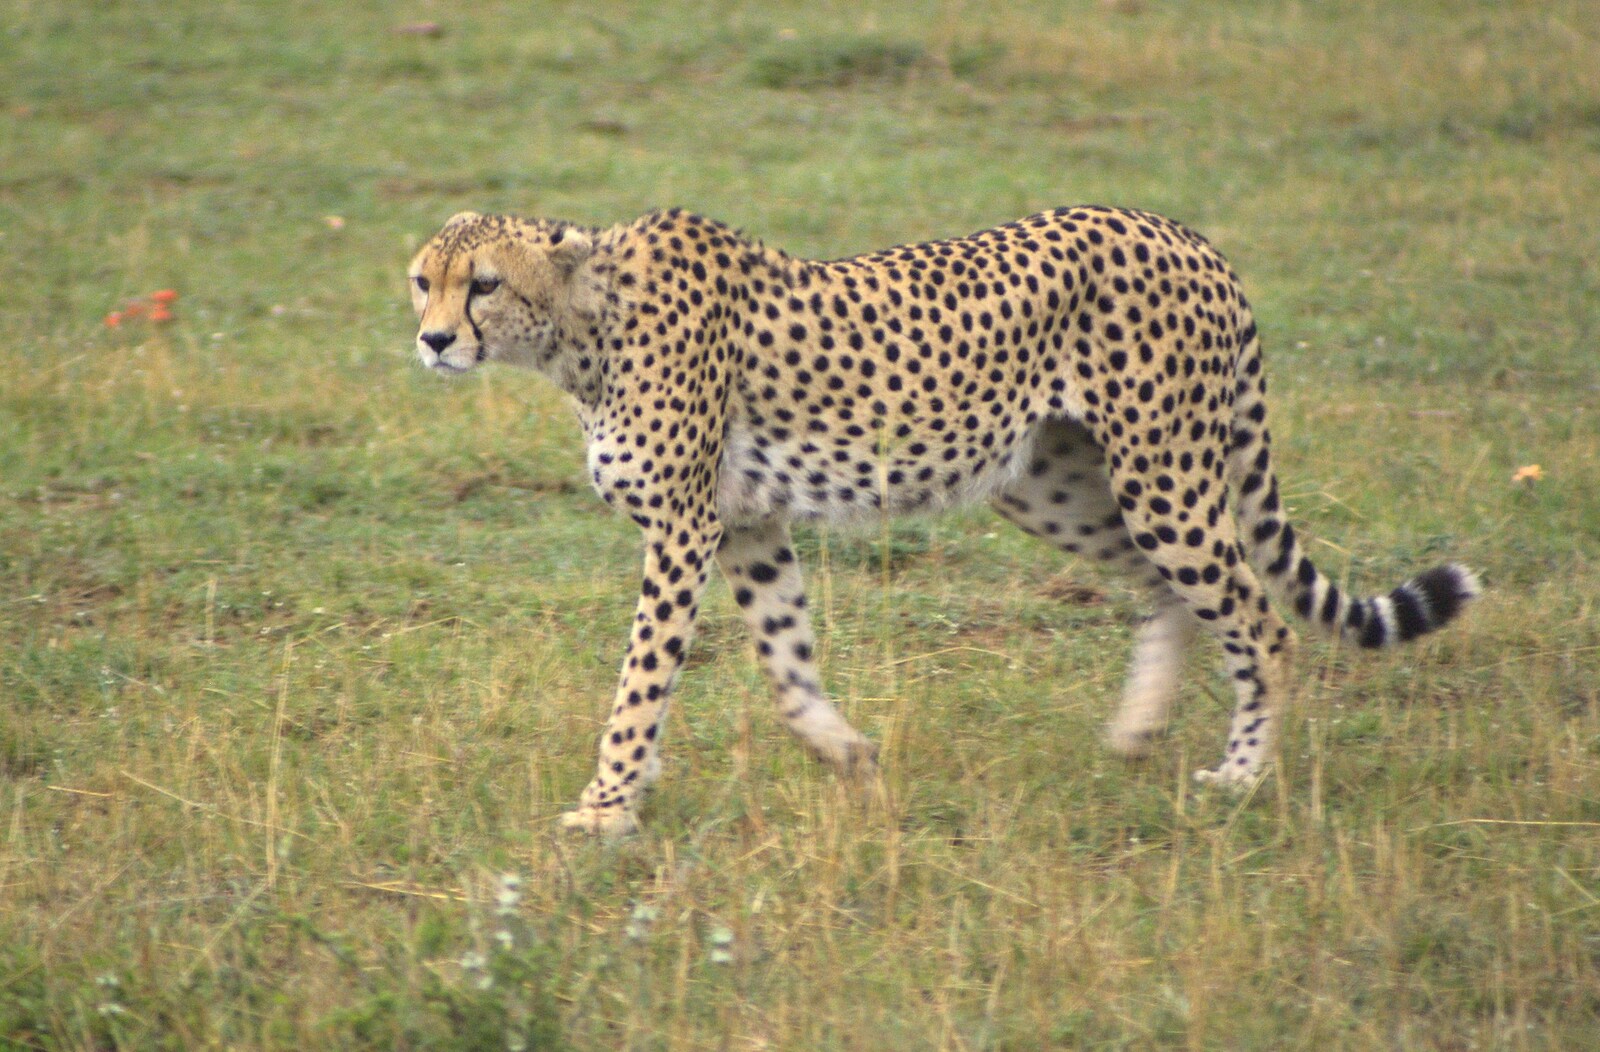 Maasai Mara Safari and a Maasai Village, Ololaimutia, Kenya - 5th November 2010: A cheetah prowls